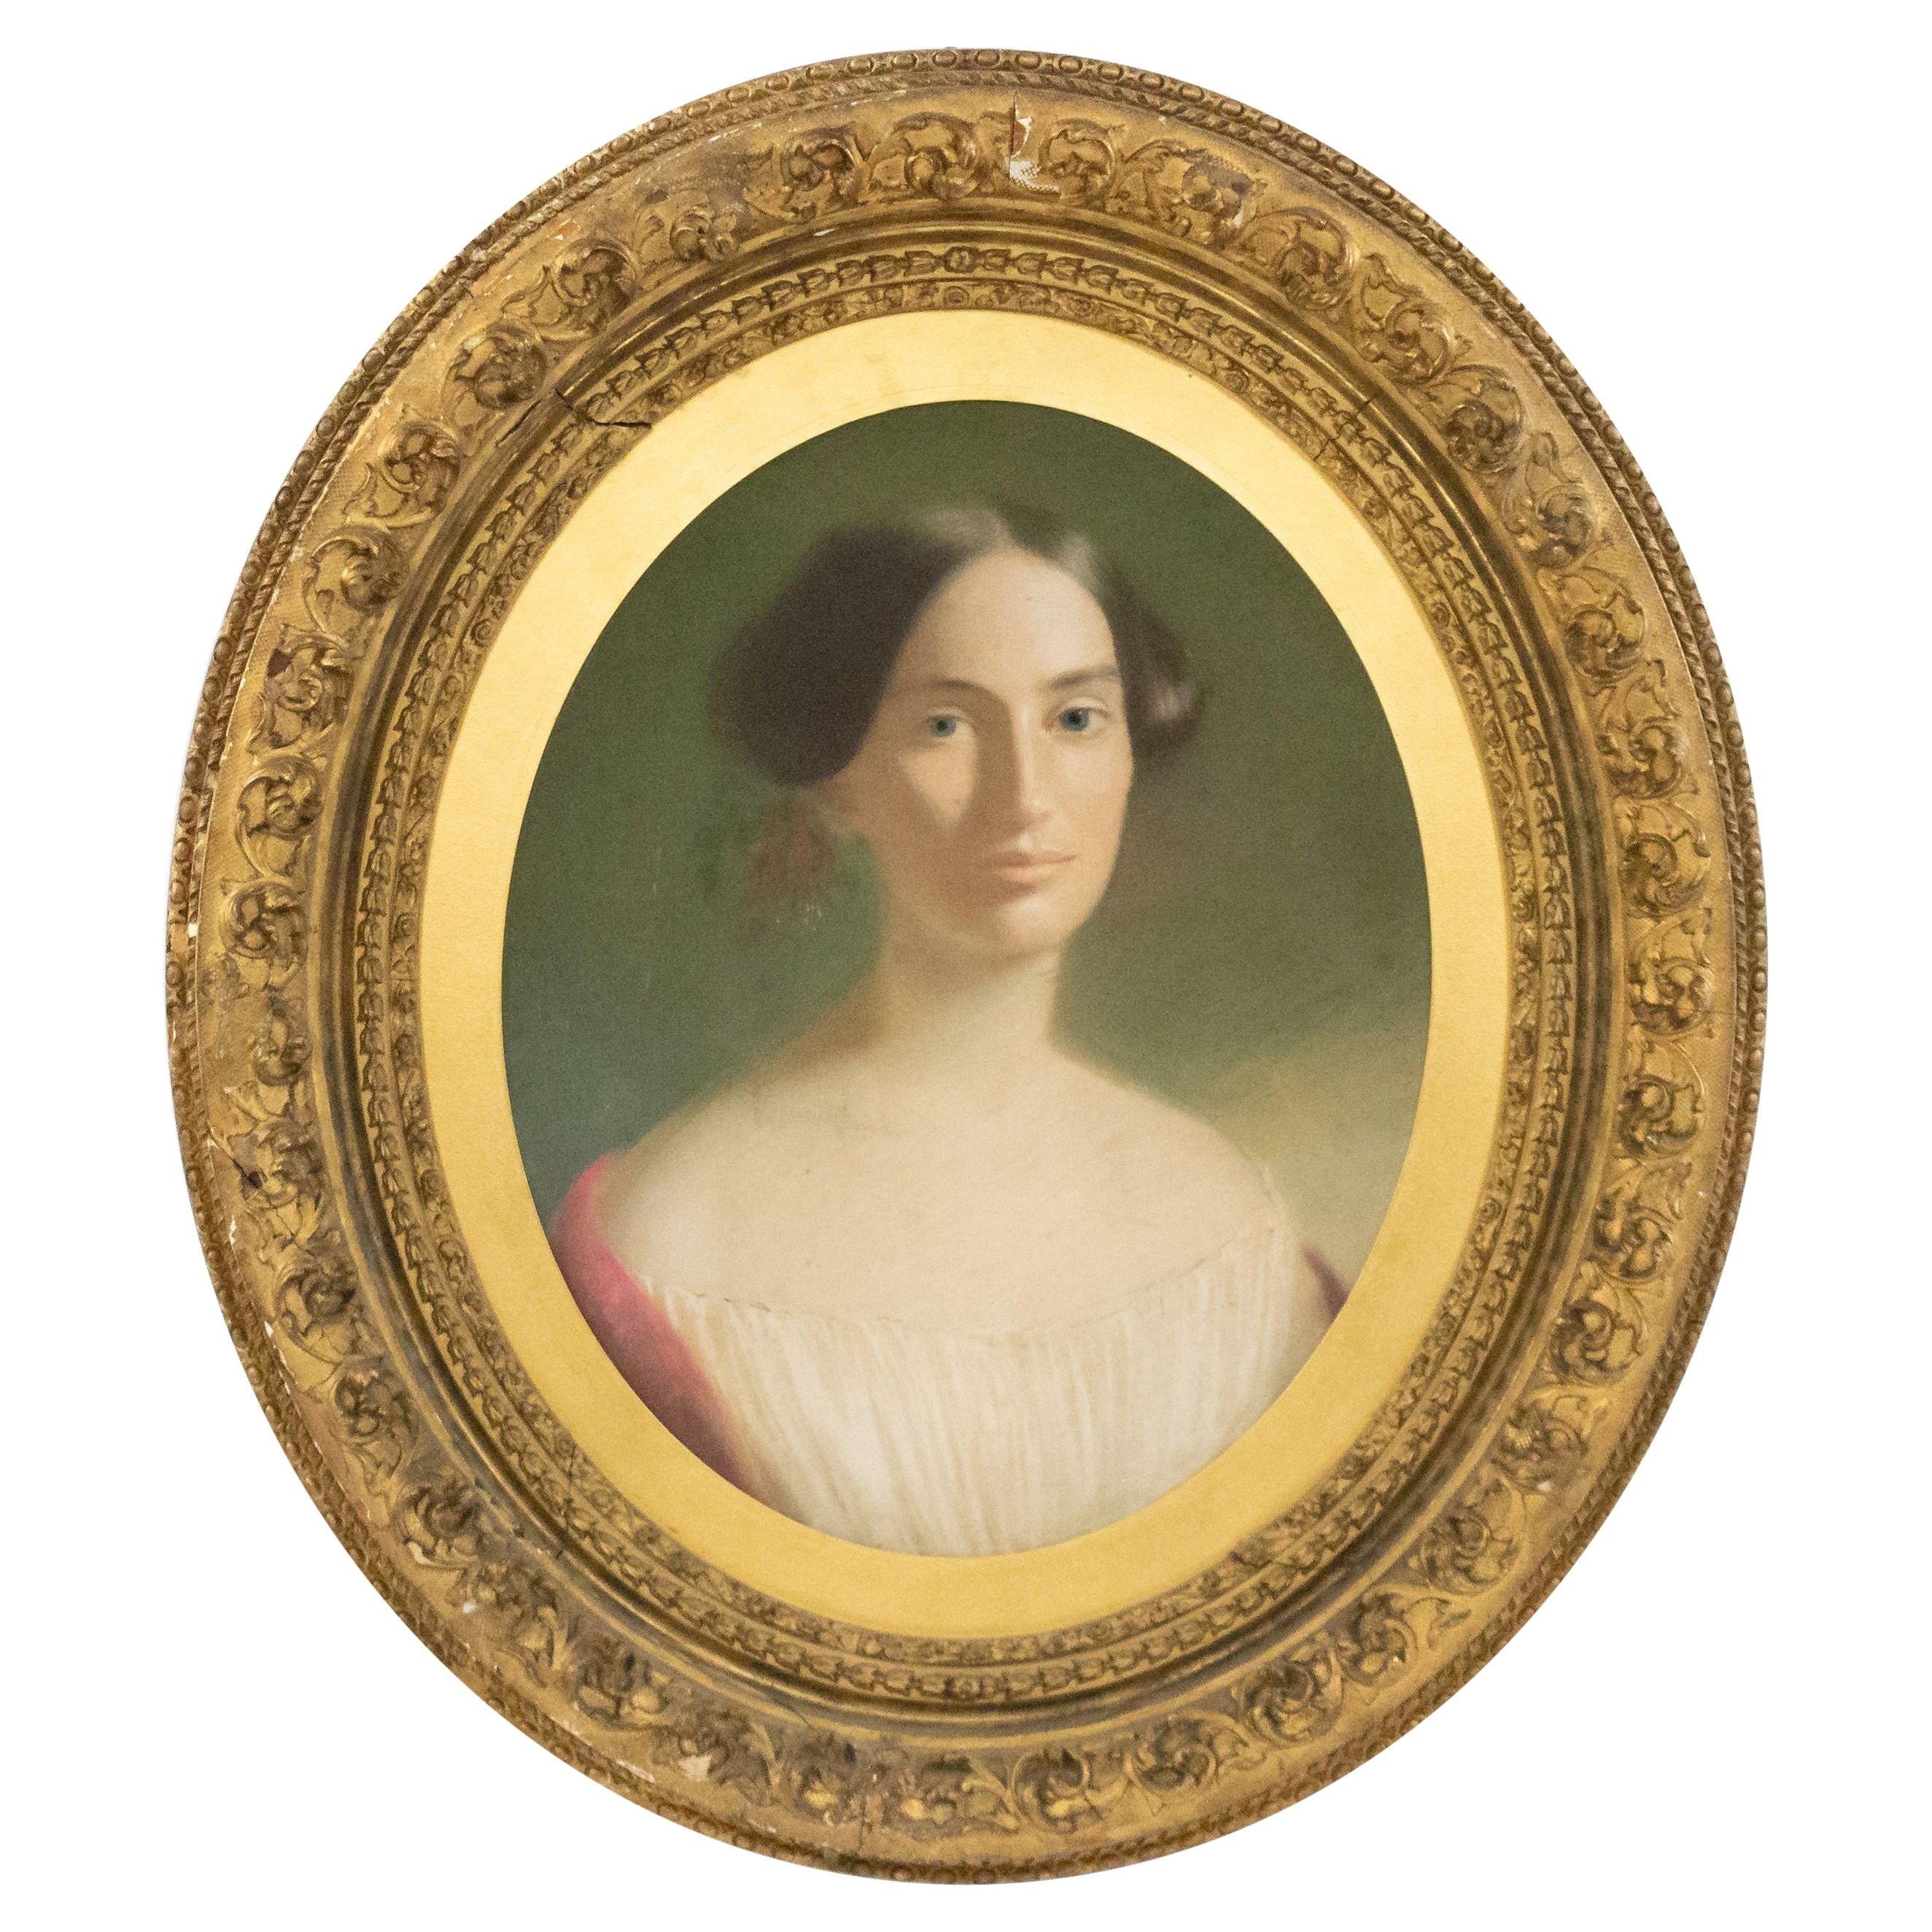 Amerikanisches viktorianisches Pastellporträt einer Dame aus dem 19. Jahrhundert in einem ovalen Rahmen